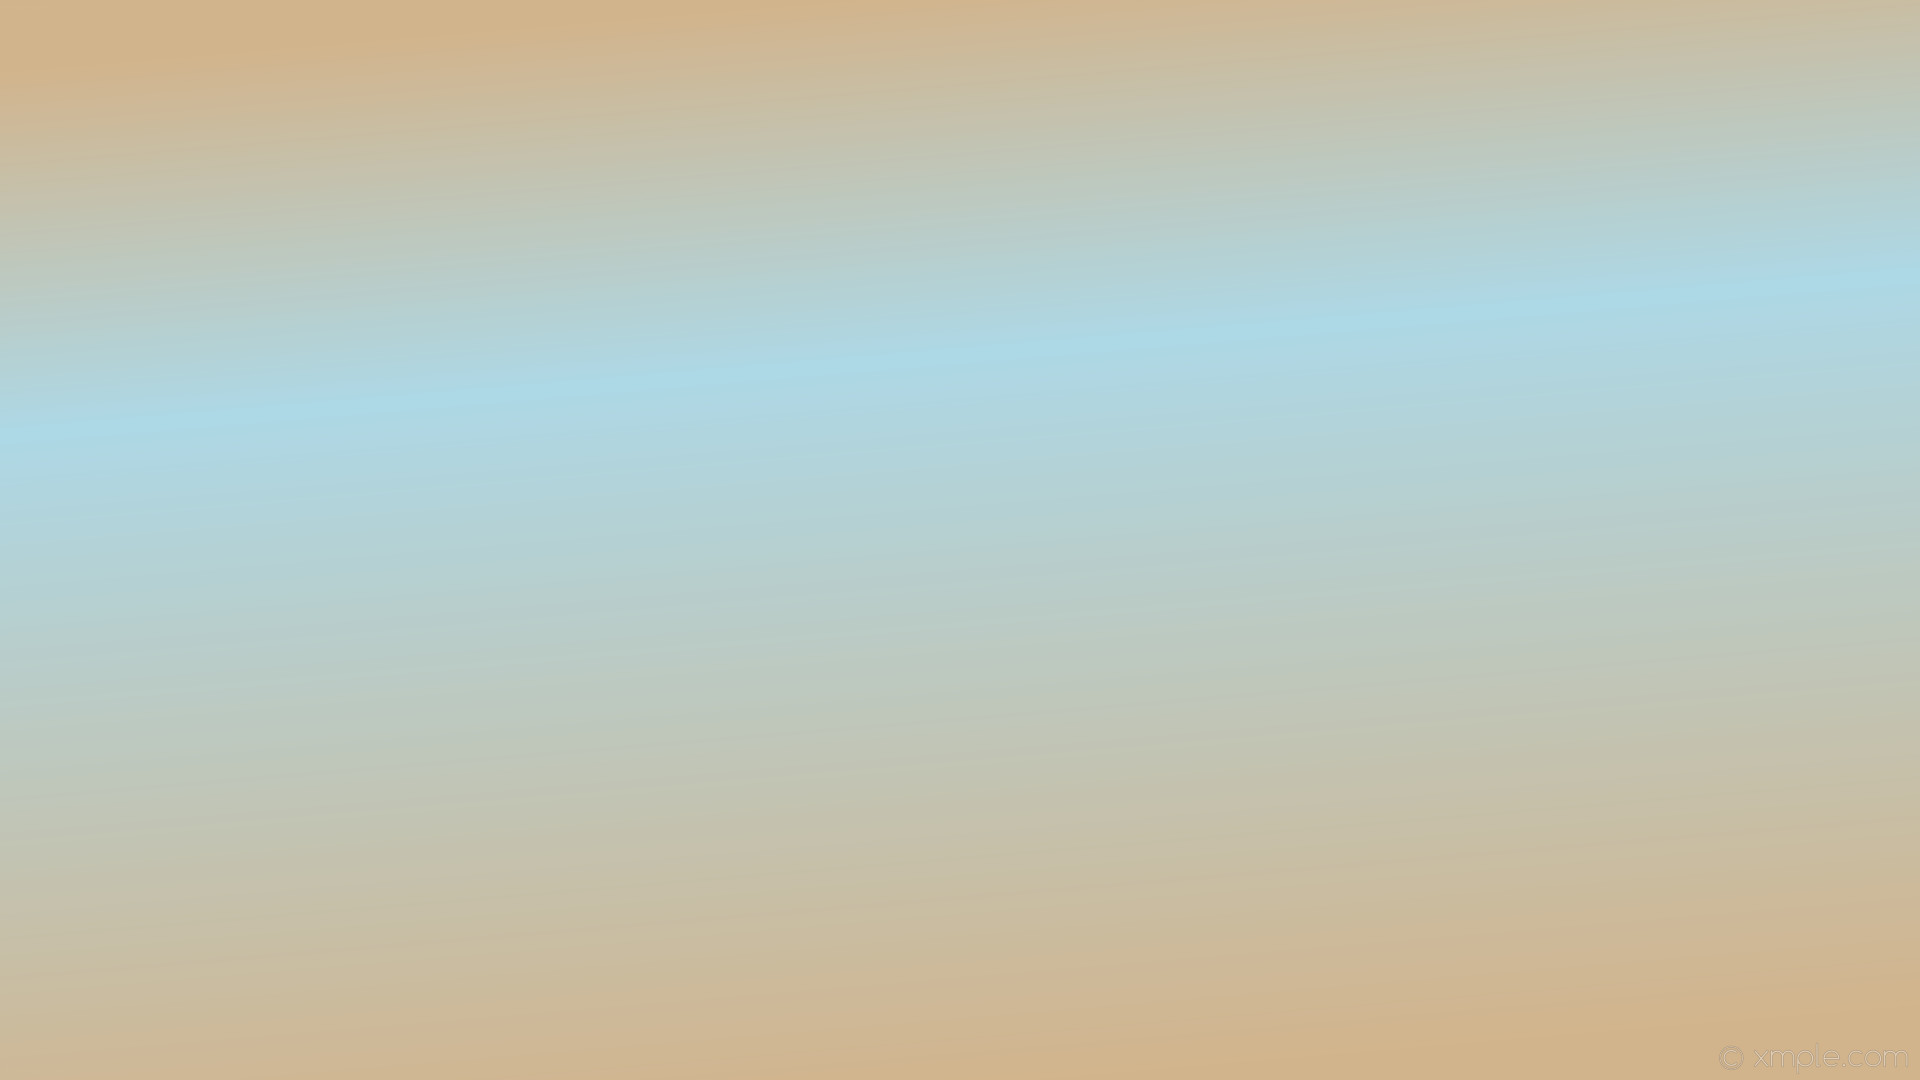 Wallpaper brown highlight linear gradient blue tan light blue #d2b48c #add8e6 105 33